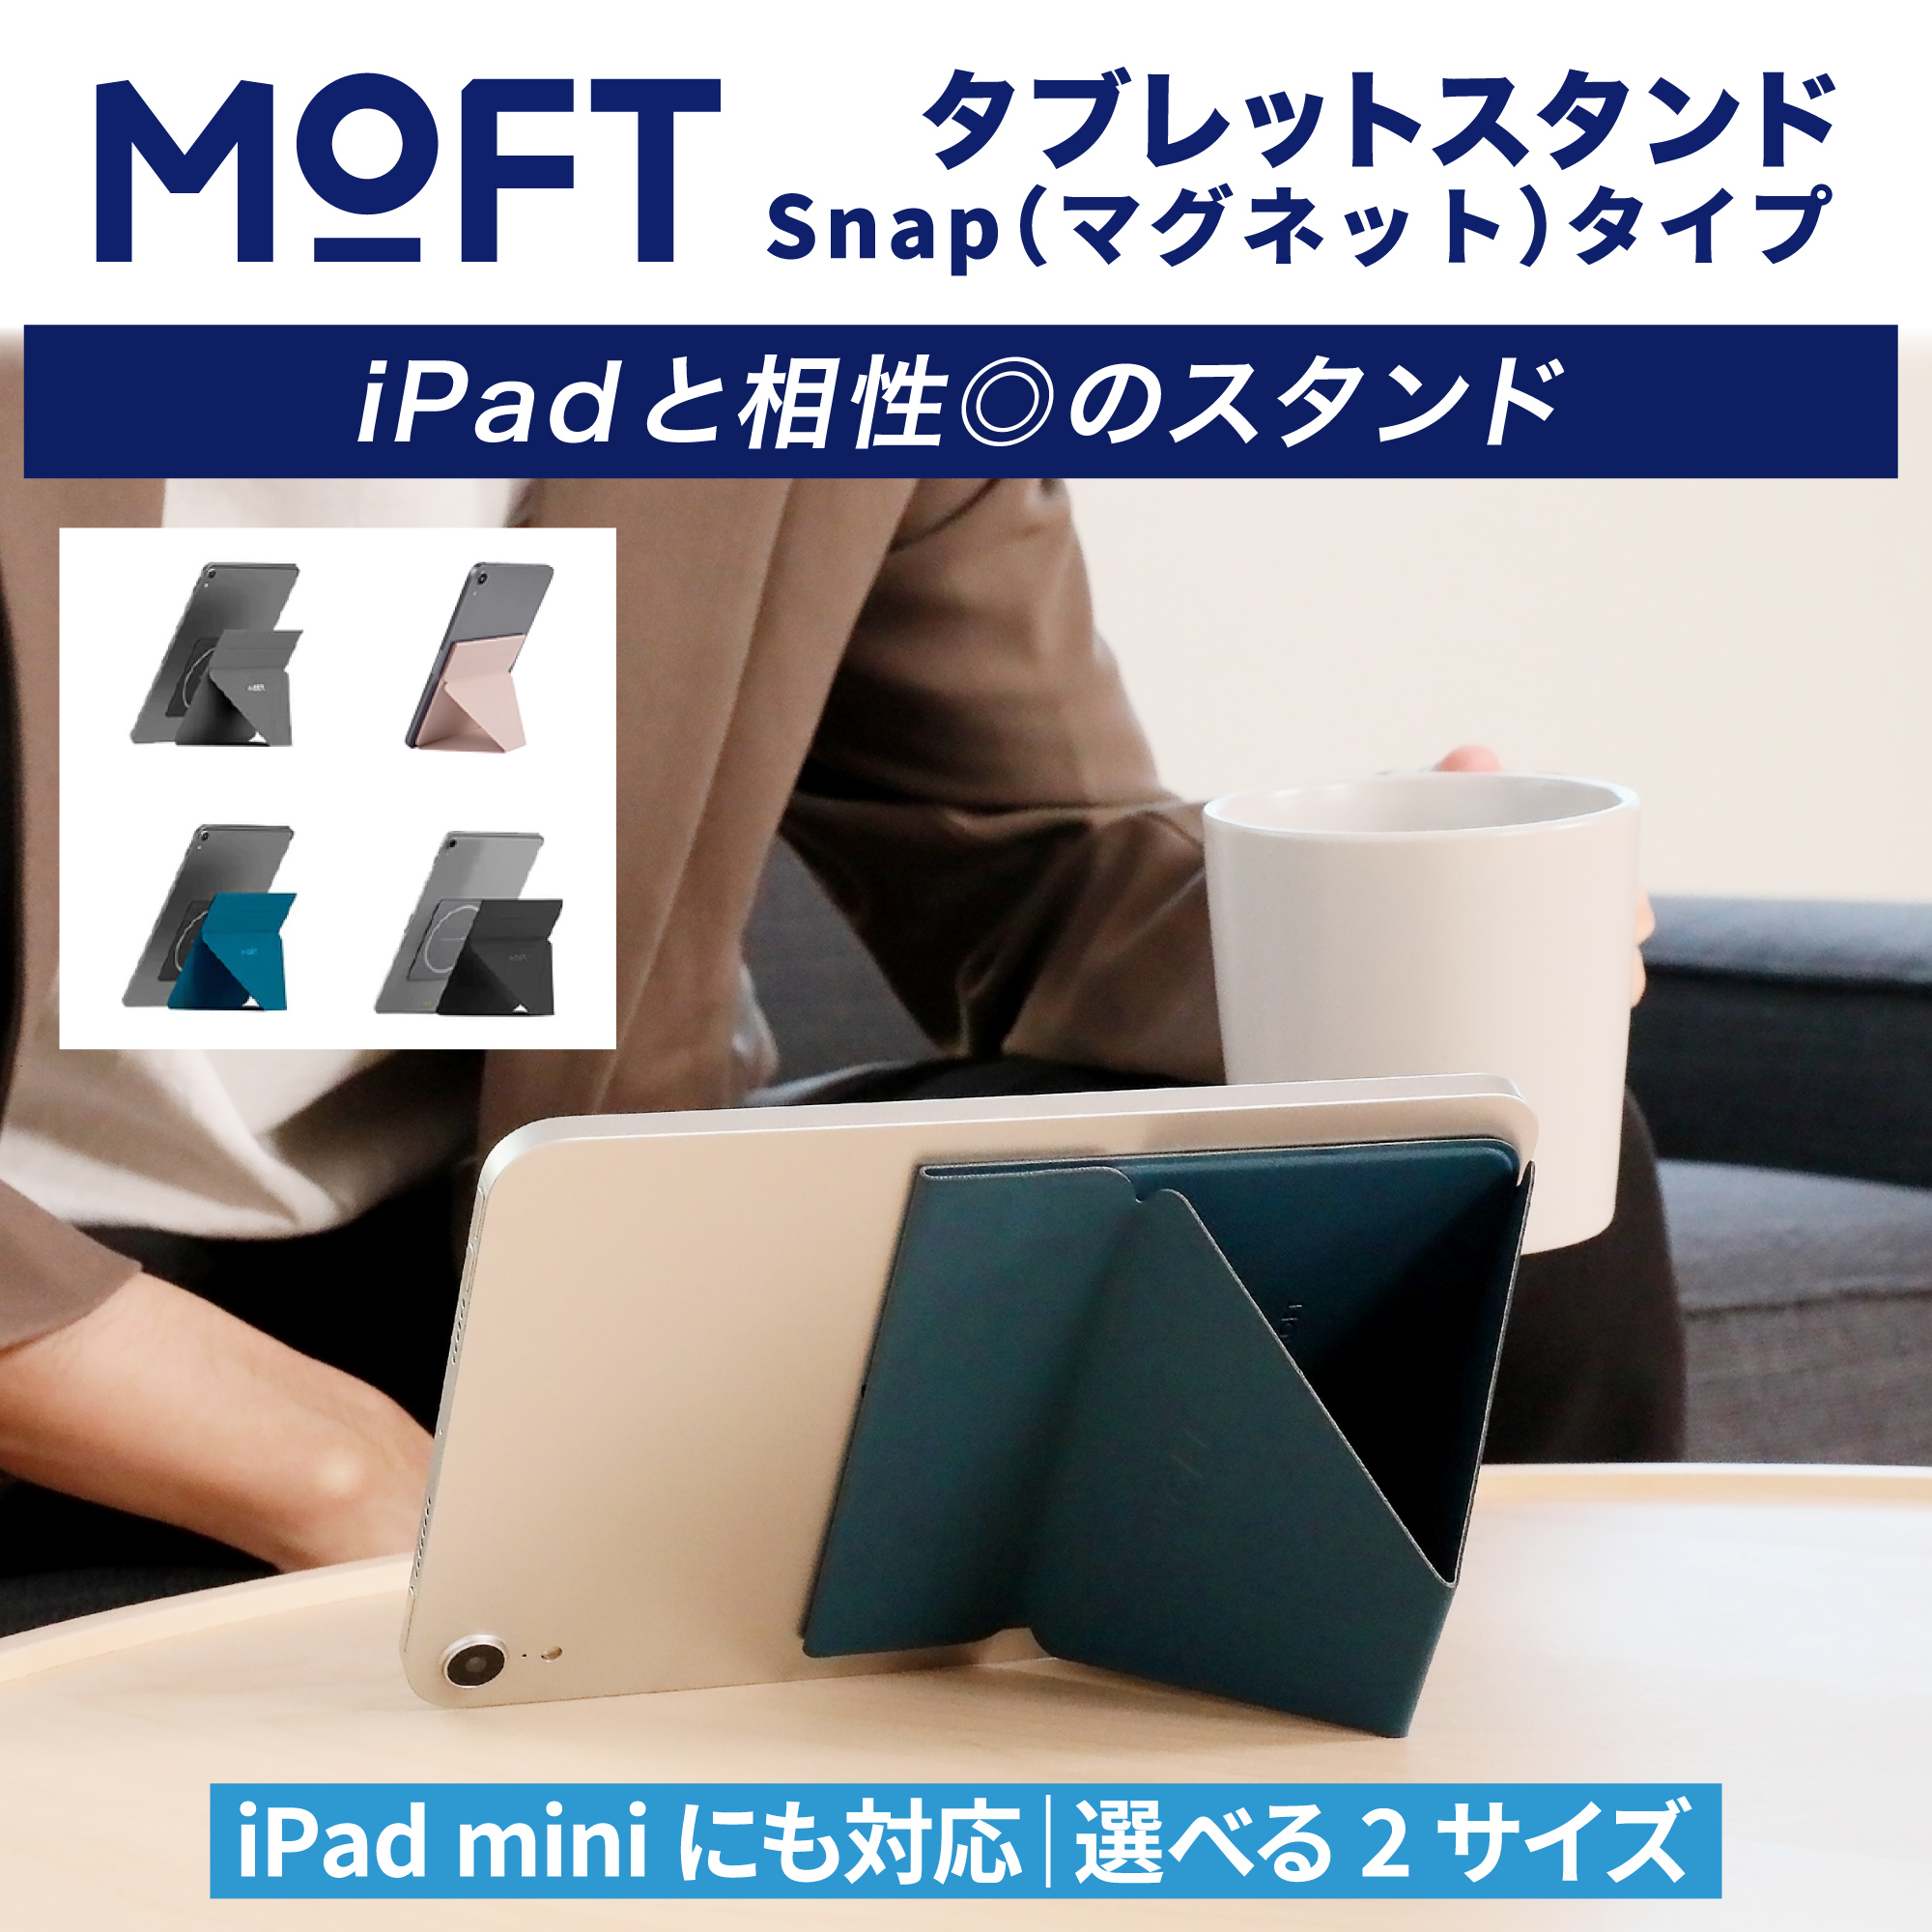 【新型 / マグネット式】 MOFT iPad スタンド モフト アイパッド 